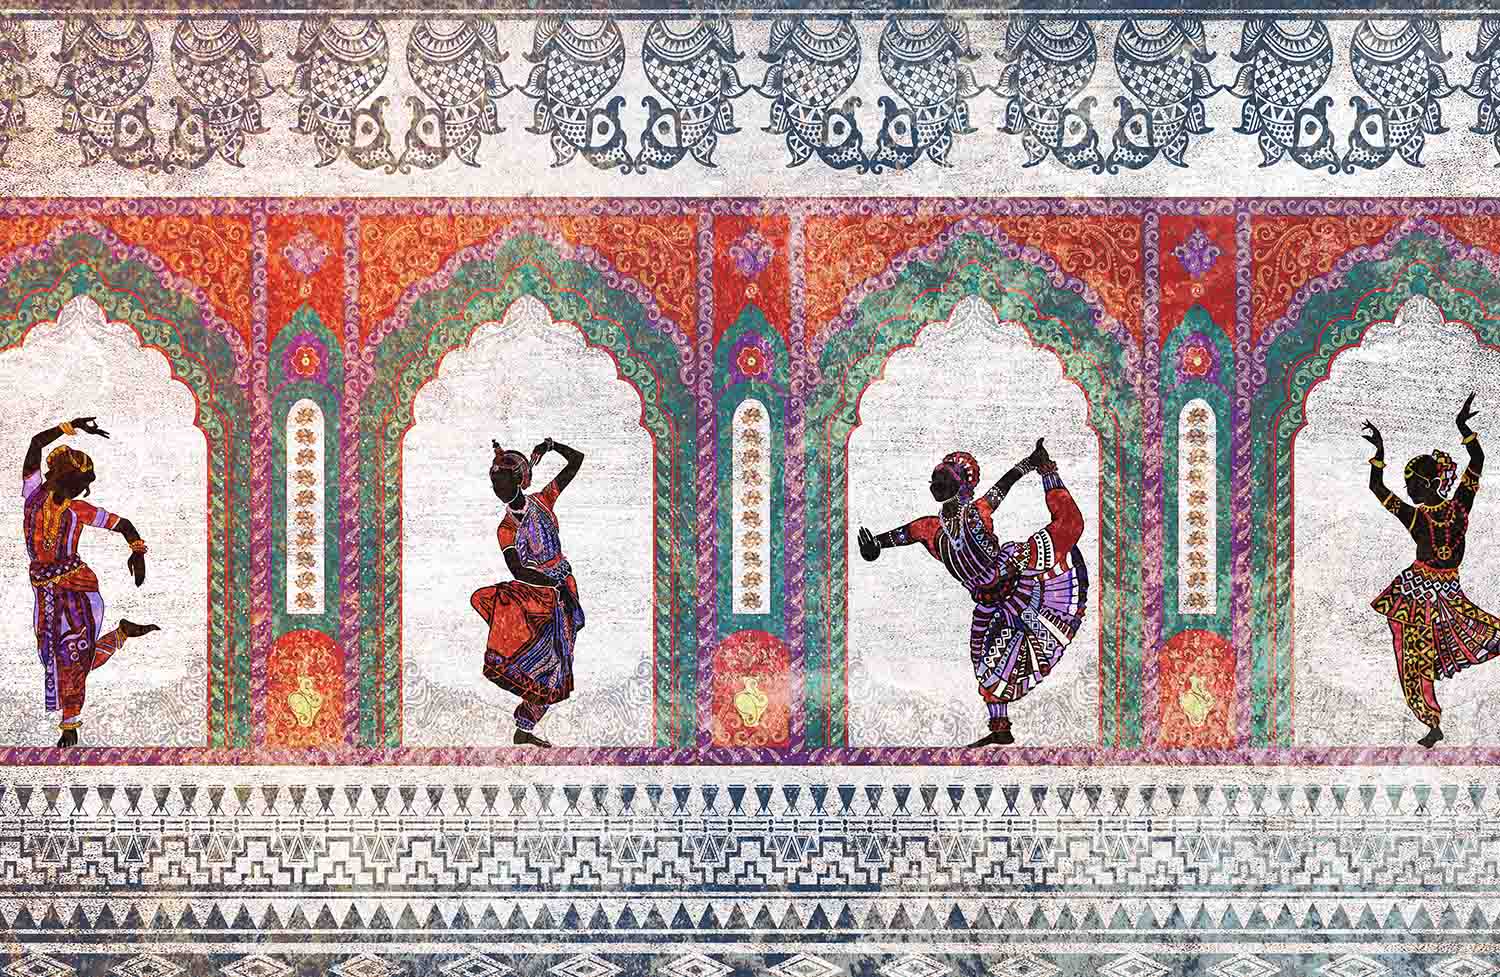 Dances of India 1